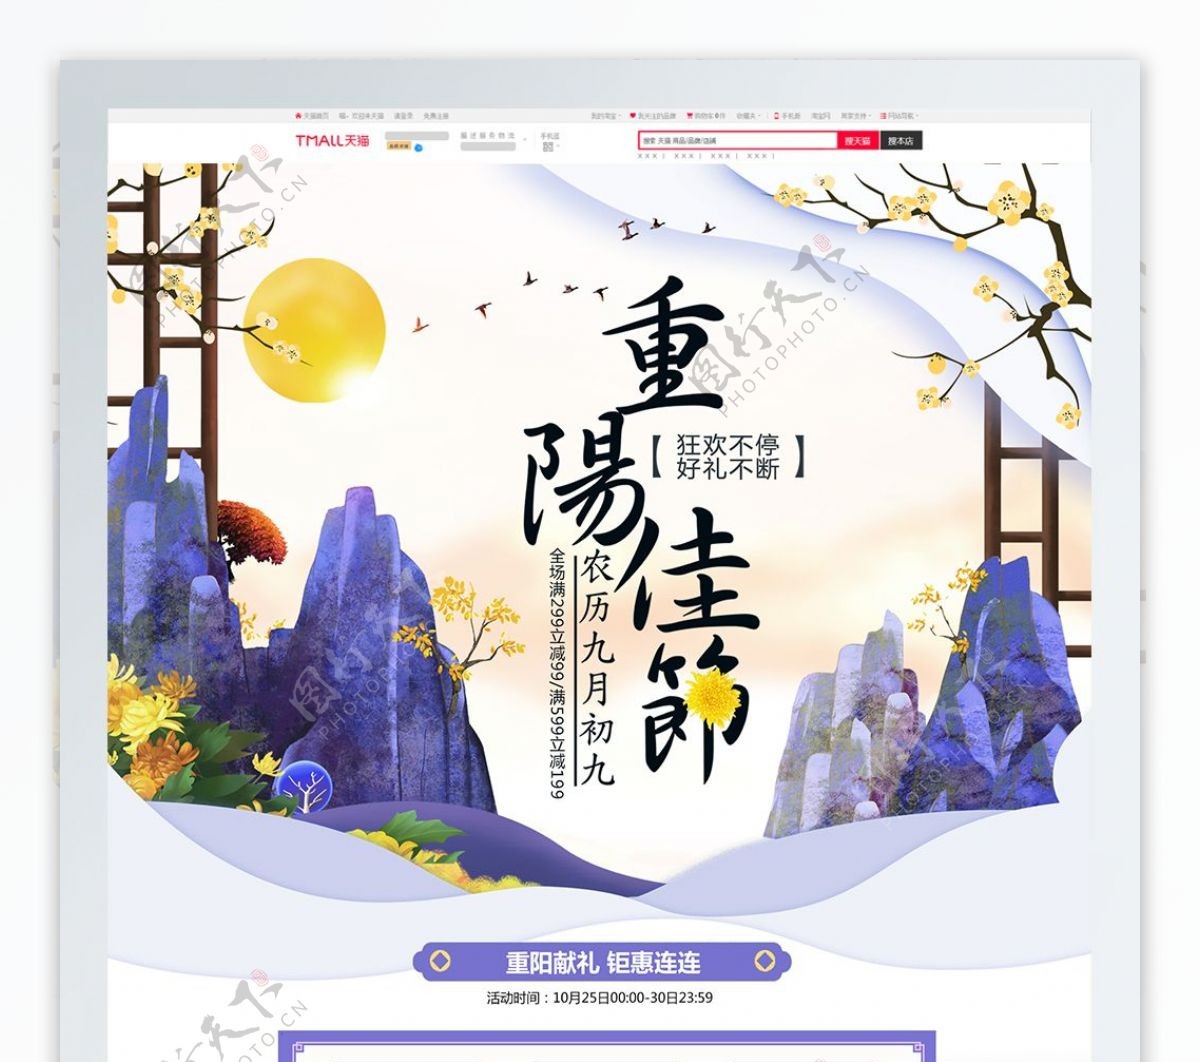 紫色清新中国风重阳节登高食品茶饮淘宝首页